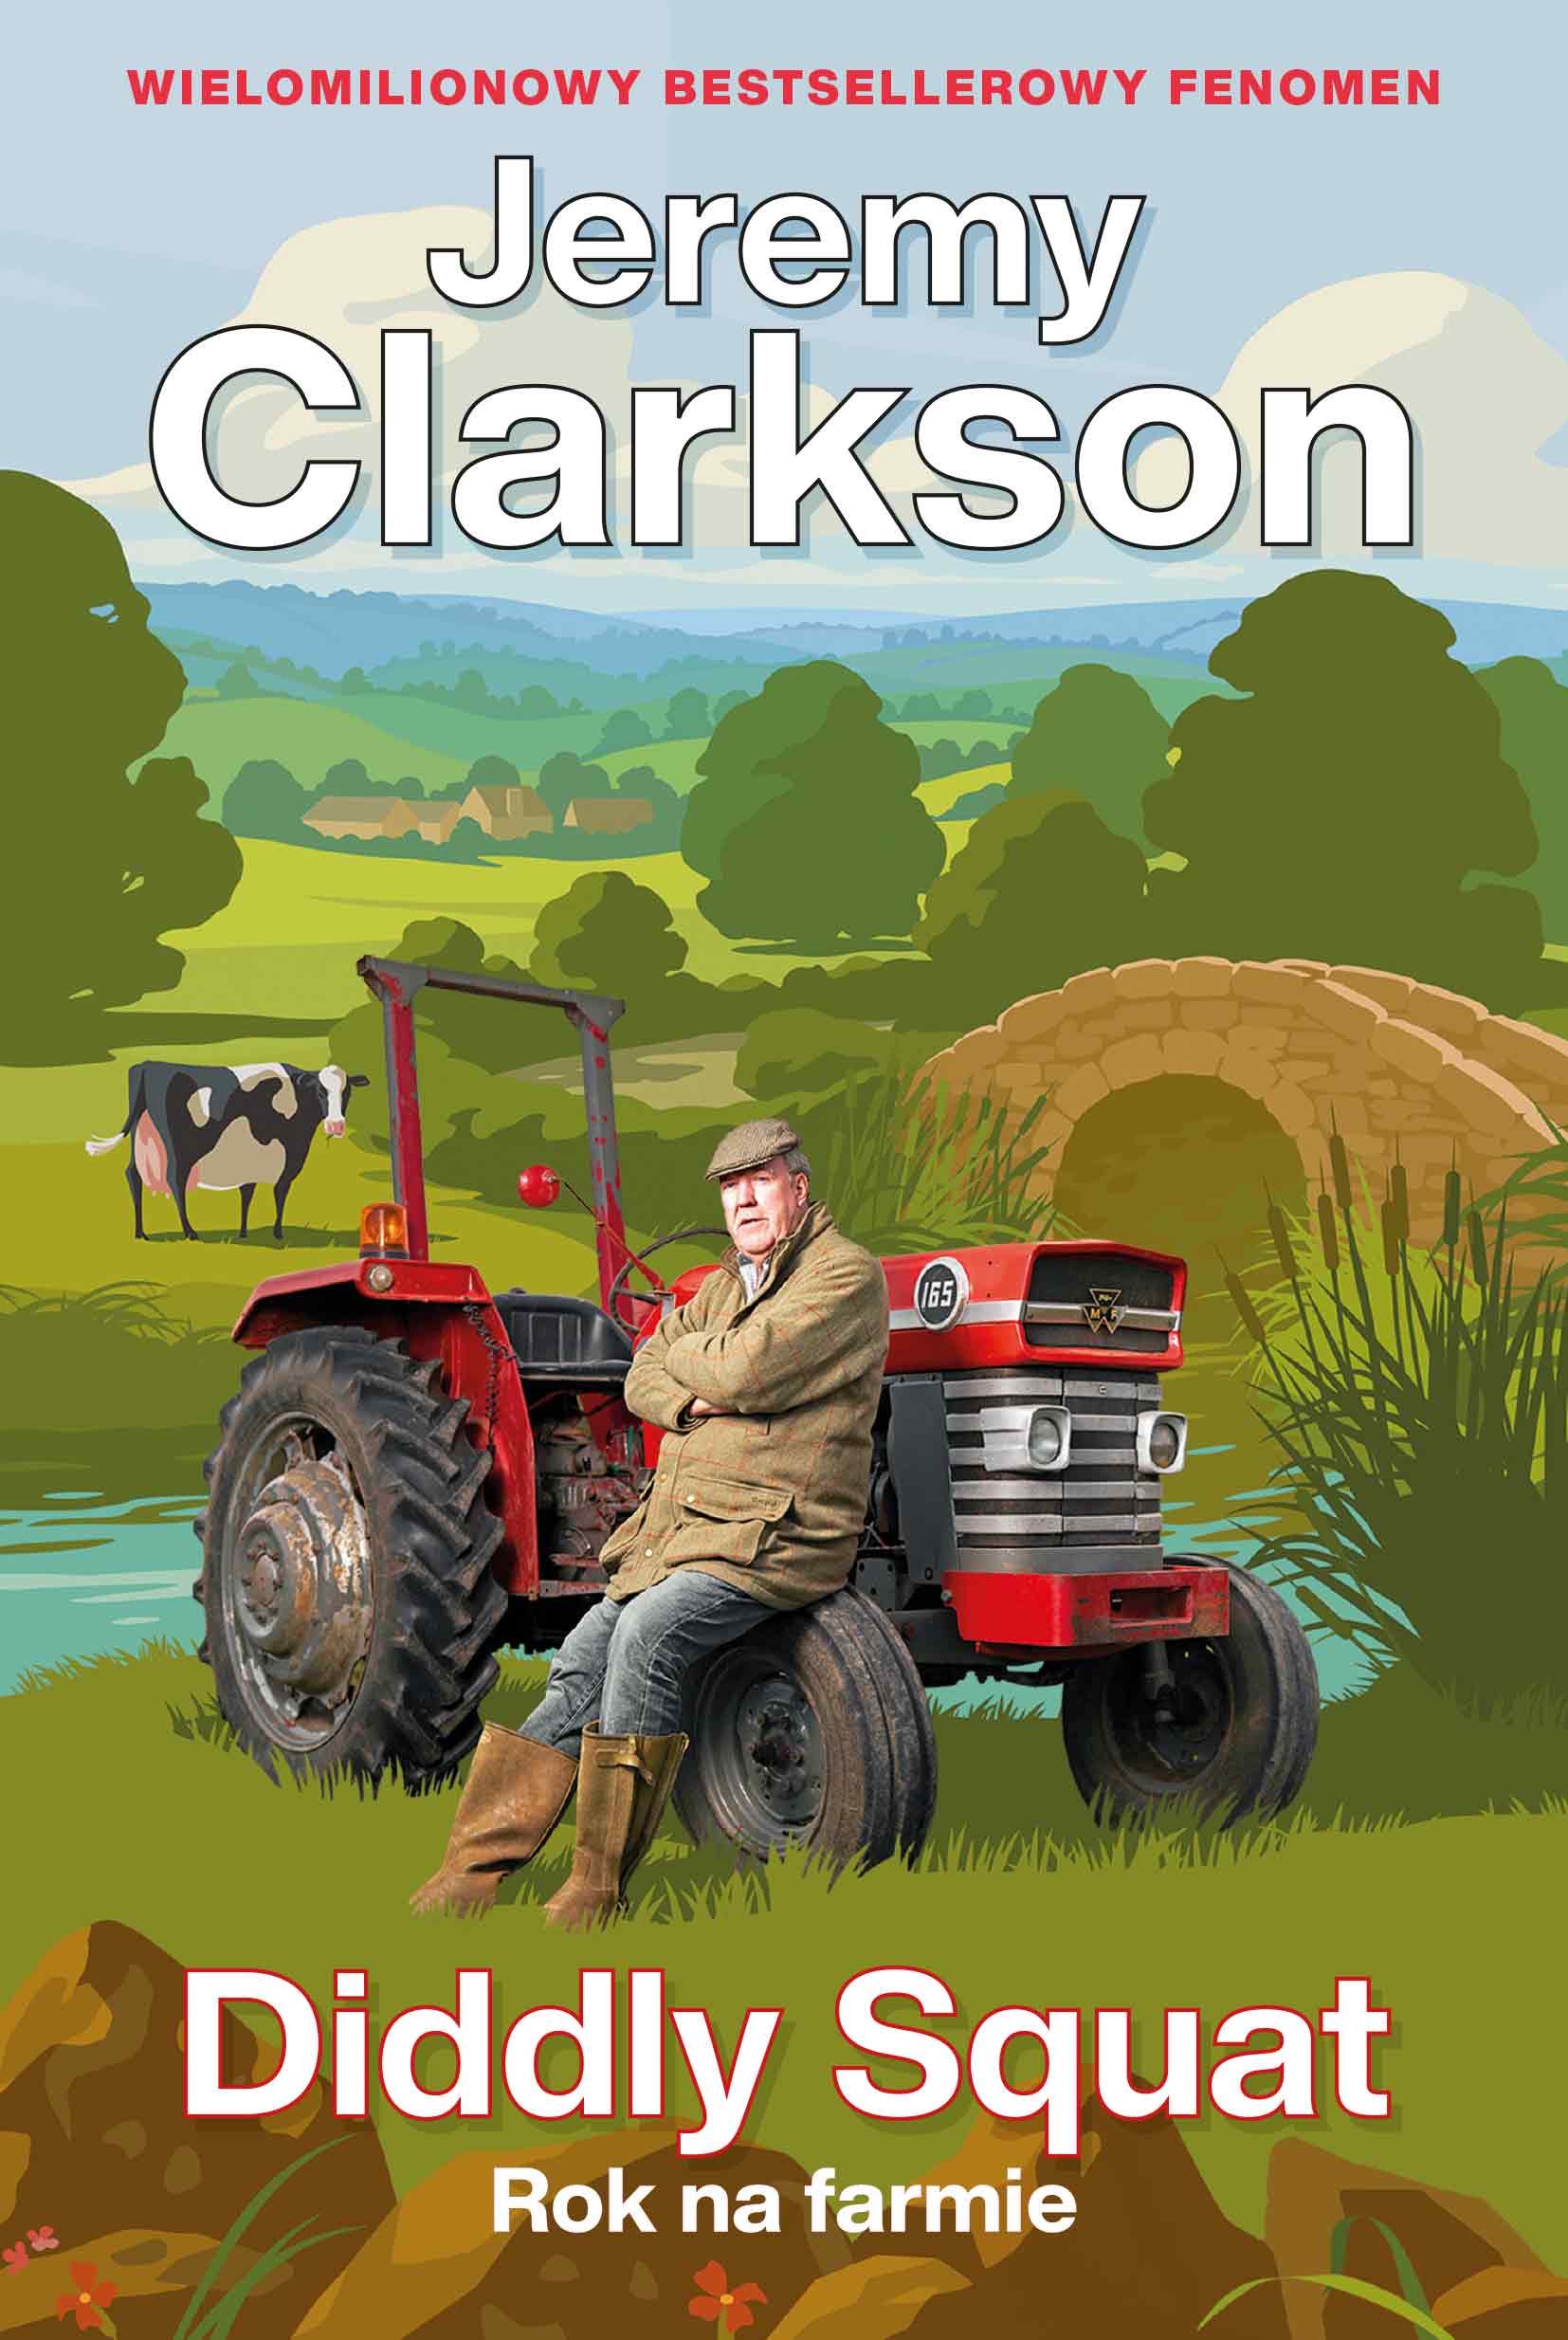 Jeremy Clarkson „Diddly Squat. Rok na farmie”.